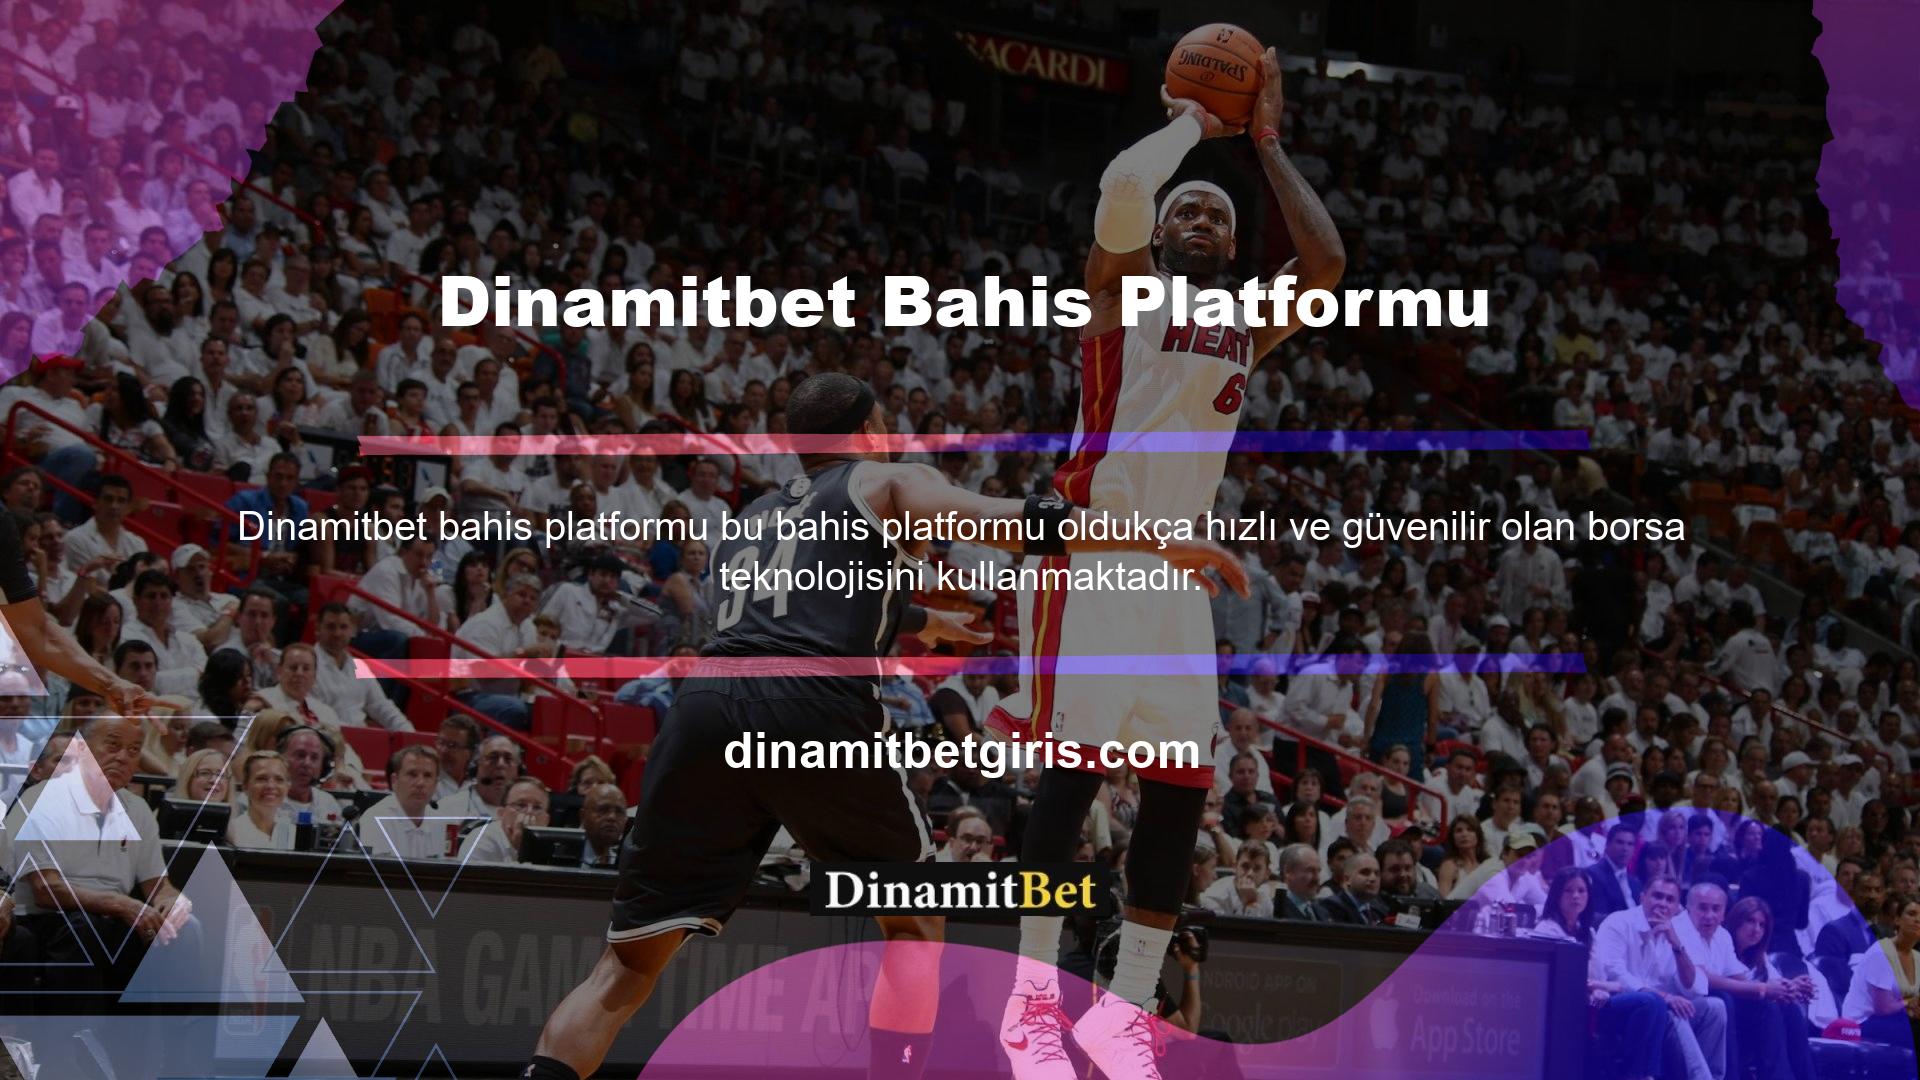 Dinamitbet bahis platformu, kullanıcılarına ilk kayıt sırasında TL sağlamaktadır